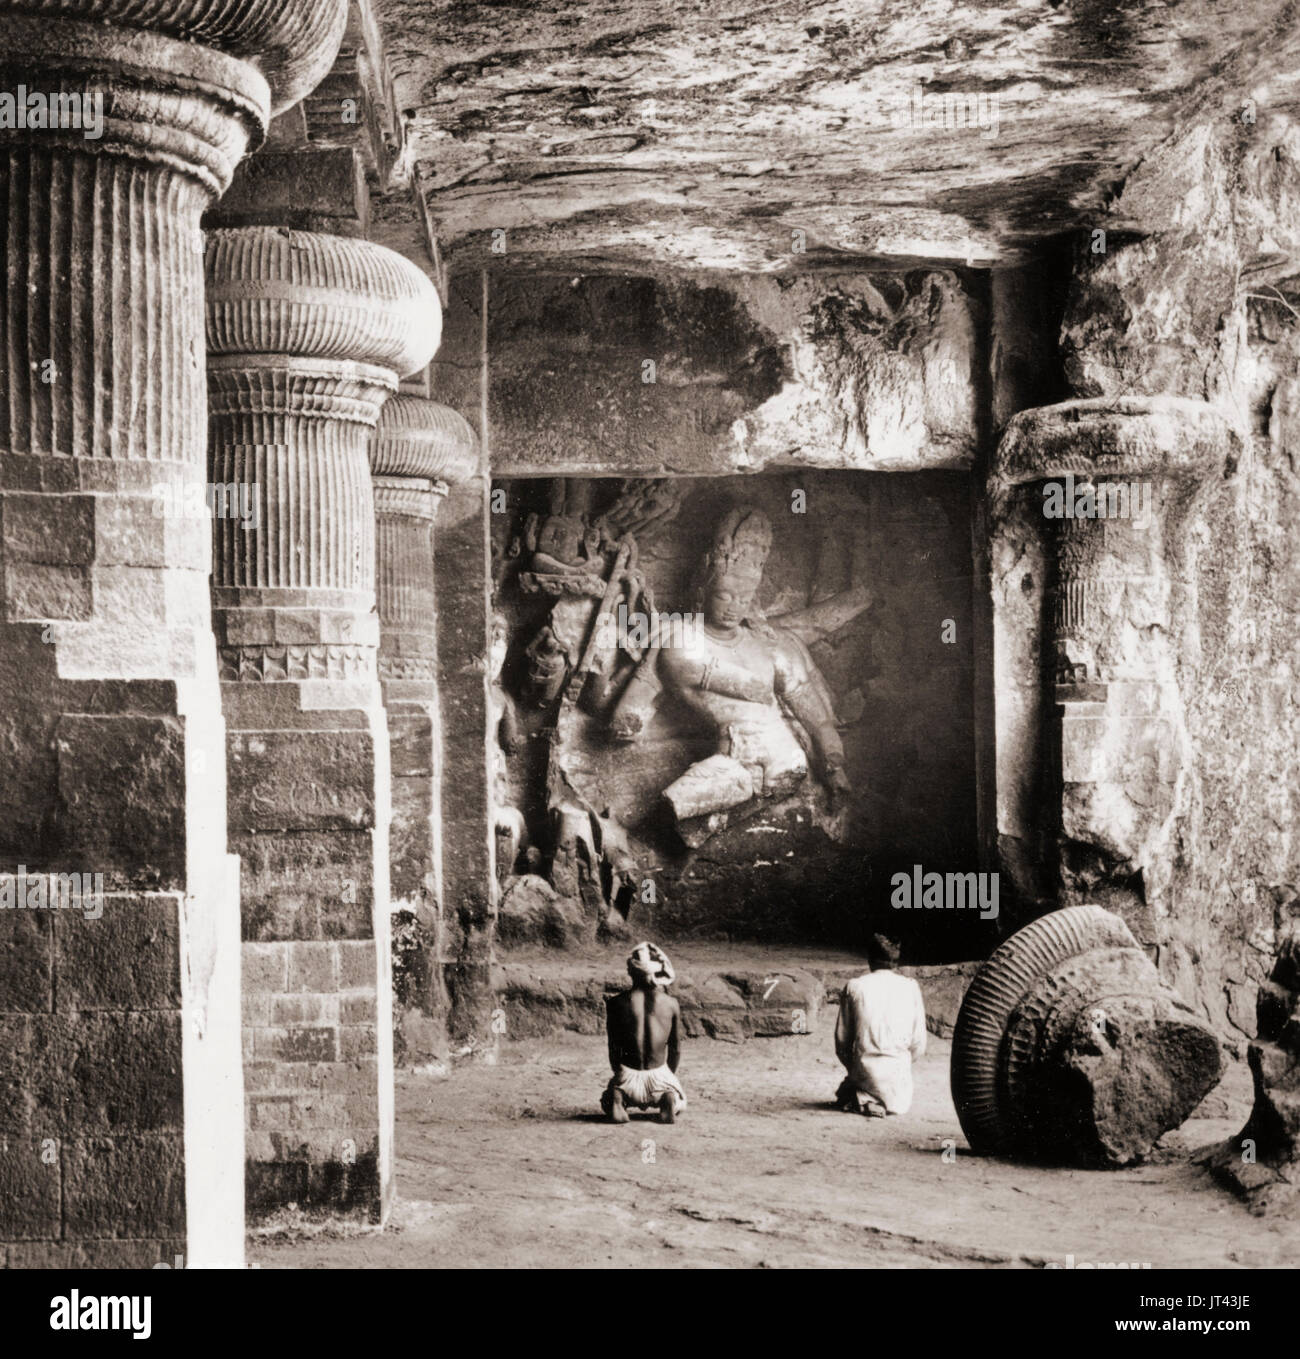 Betrunkene Tanz der achtarmigen Göttlichkeit Siva - Felsen gehauene Tempel in Elephanta, Indien um 1900 Stockfoto